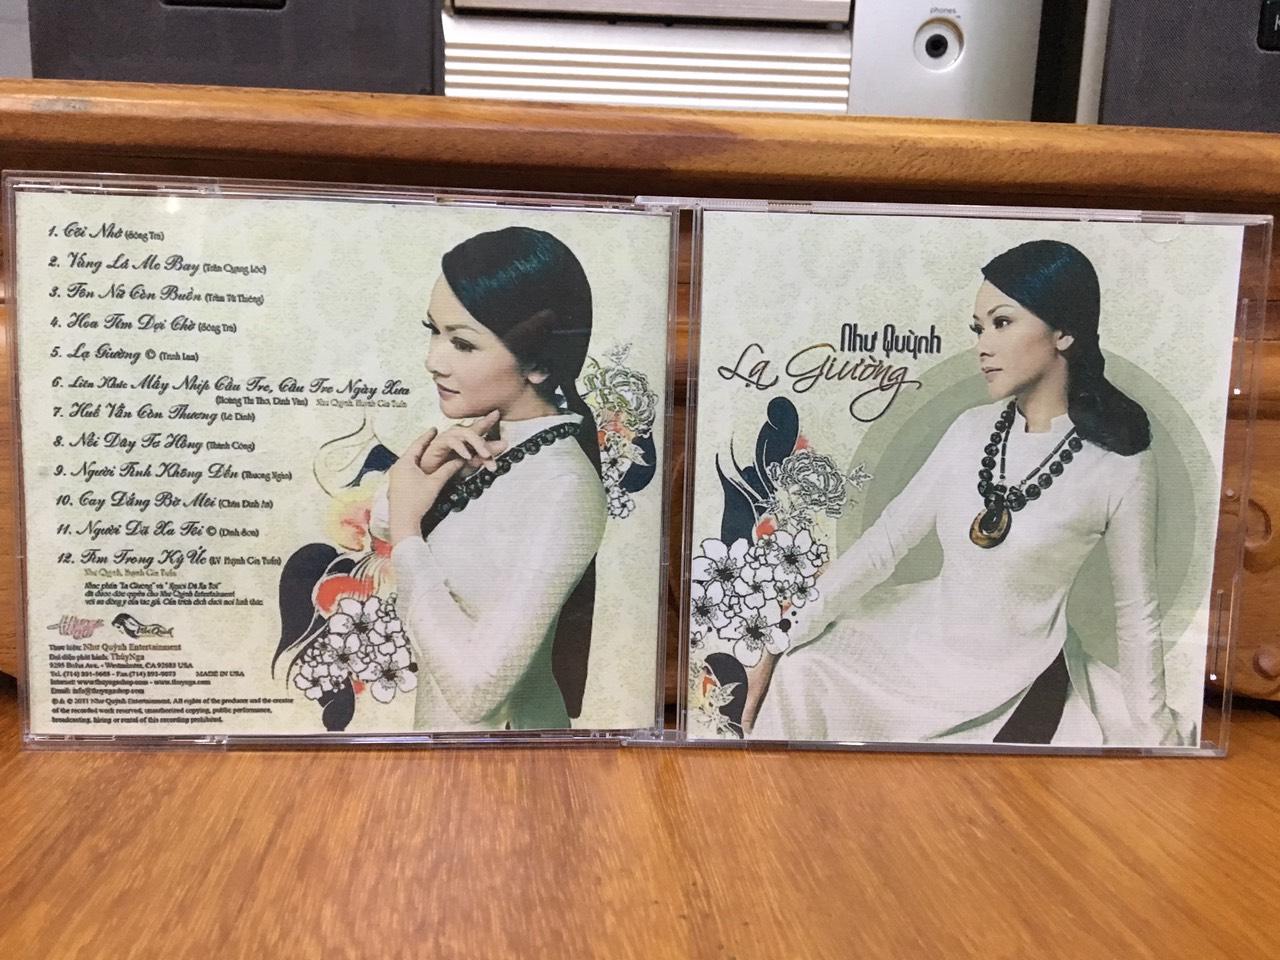 [MDCD] Bộ 5 đĩa nhạc CD Như Quỳnh chọn lọc